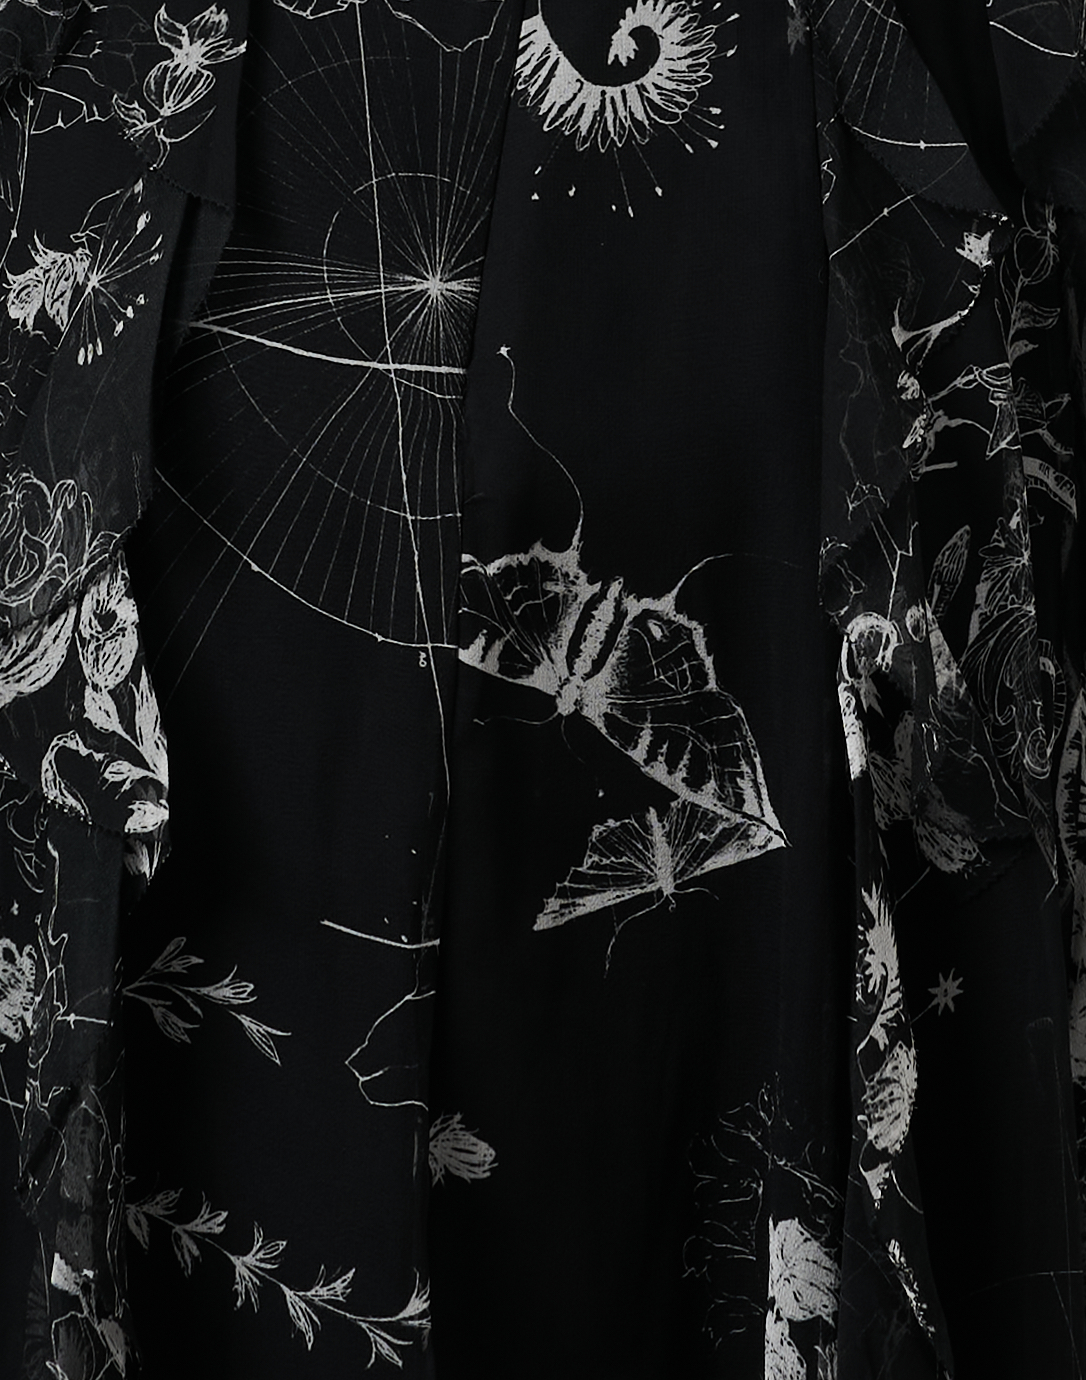 Black Multi Print Silk Chiffon Dress